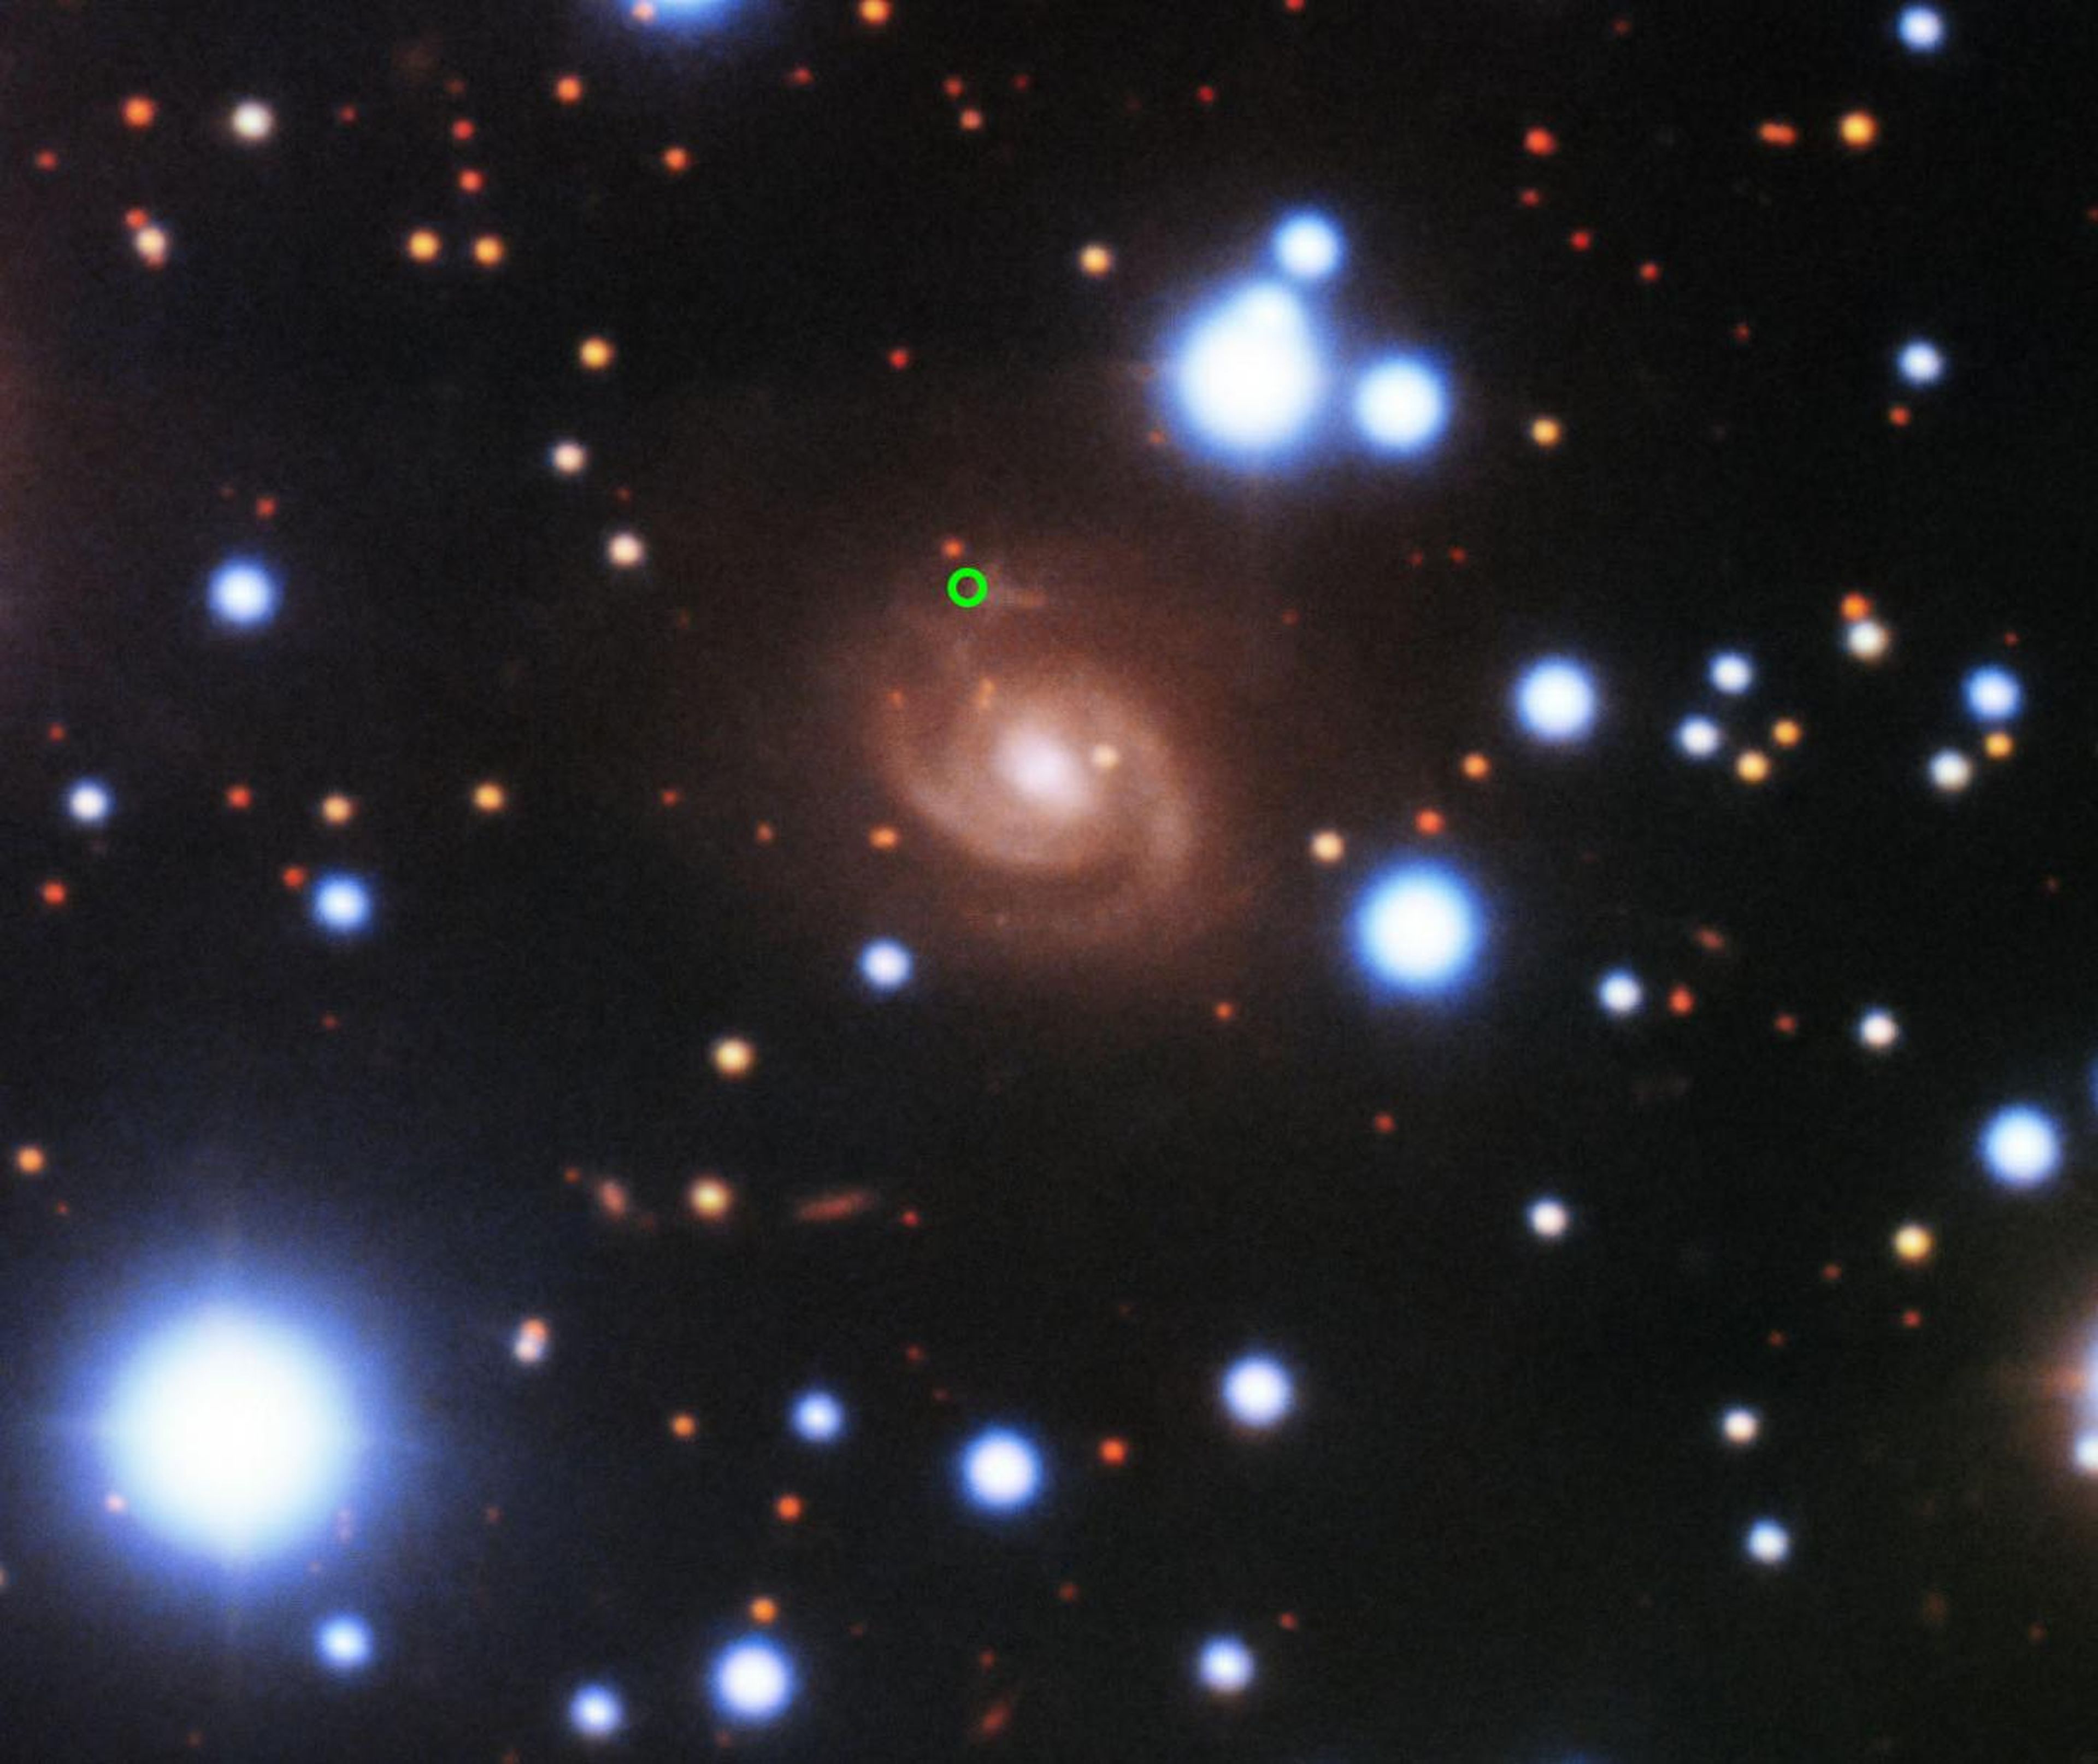 FRB o Ráfagas rápidas de radio detectadas en una galaxia cercana